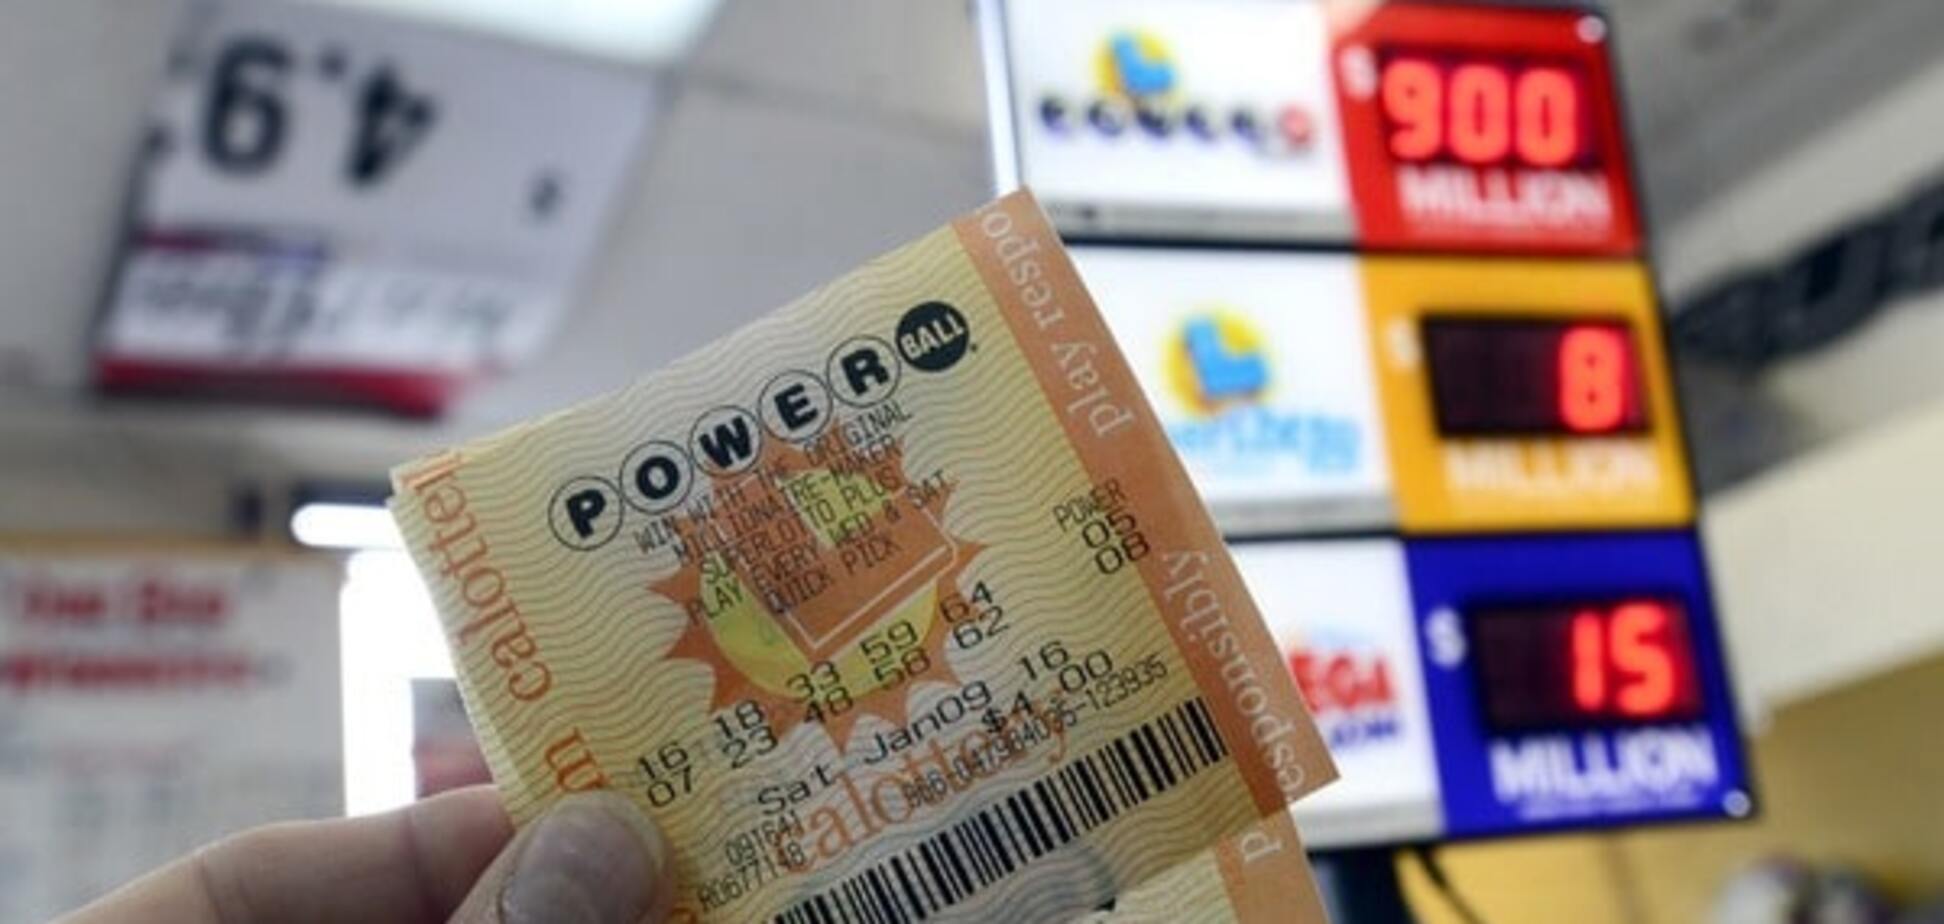 Джекпот в сотни миллионов долларов! США поразила лотерейная лихорадка